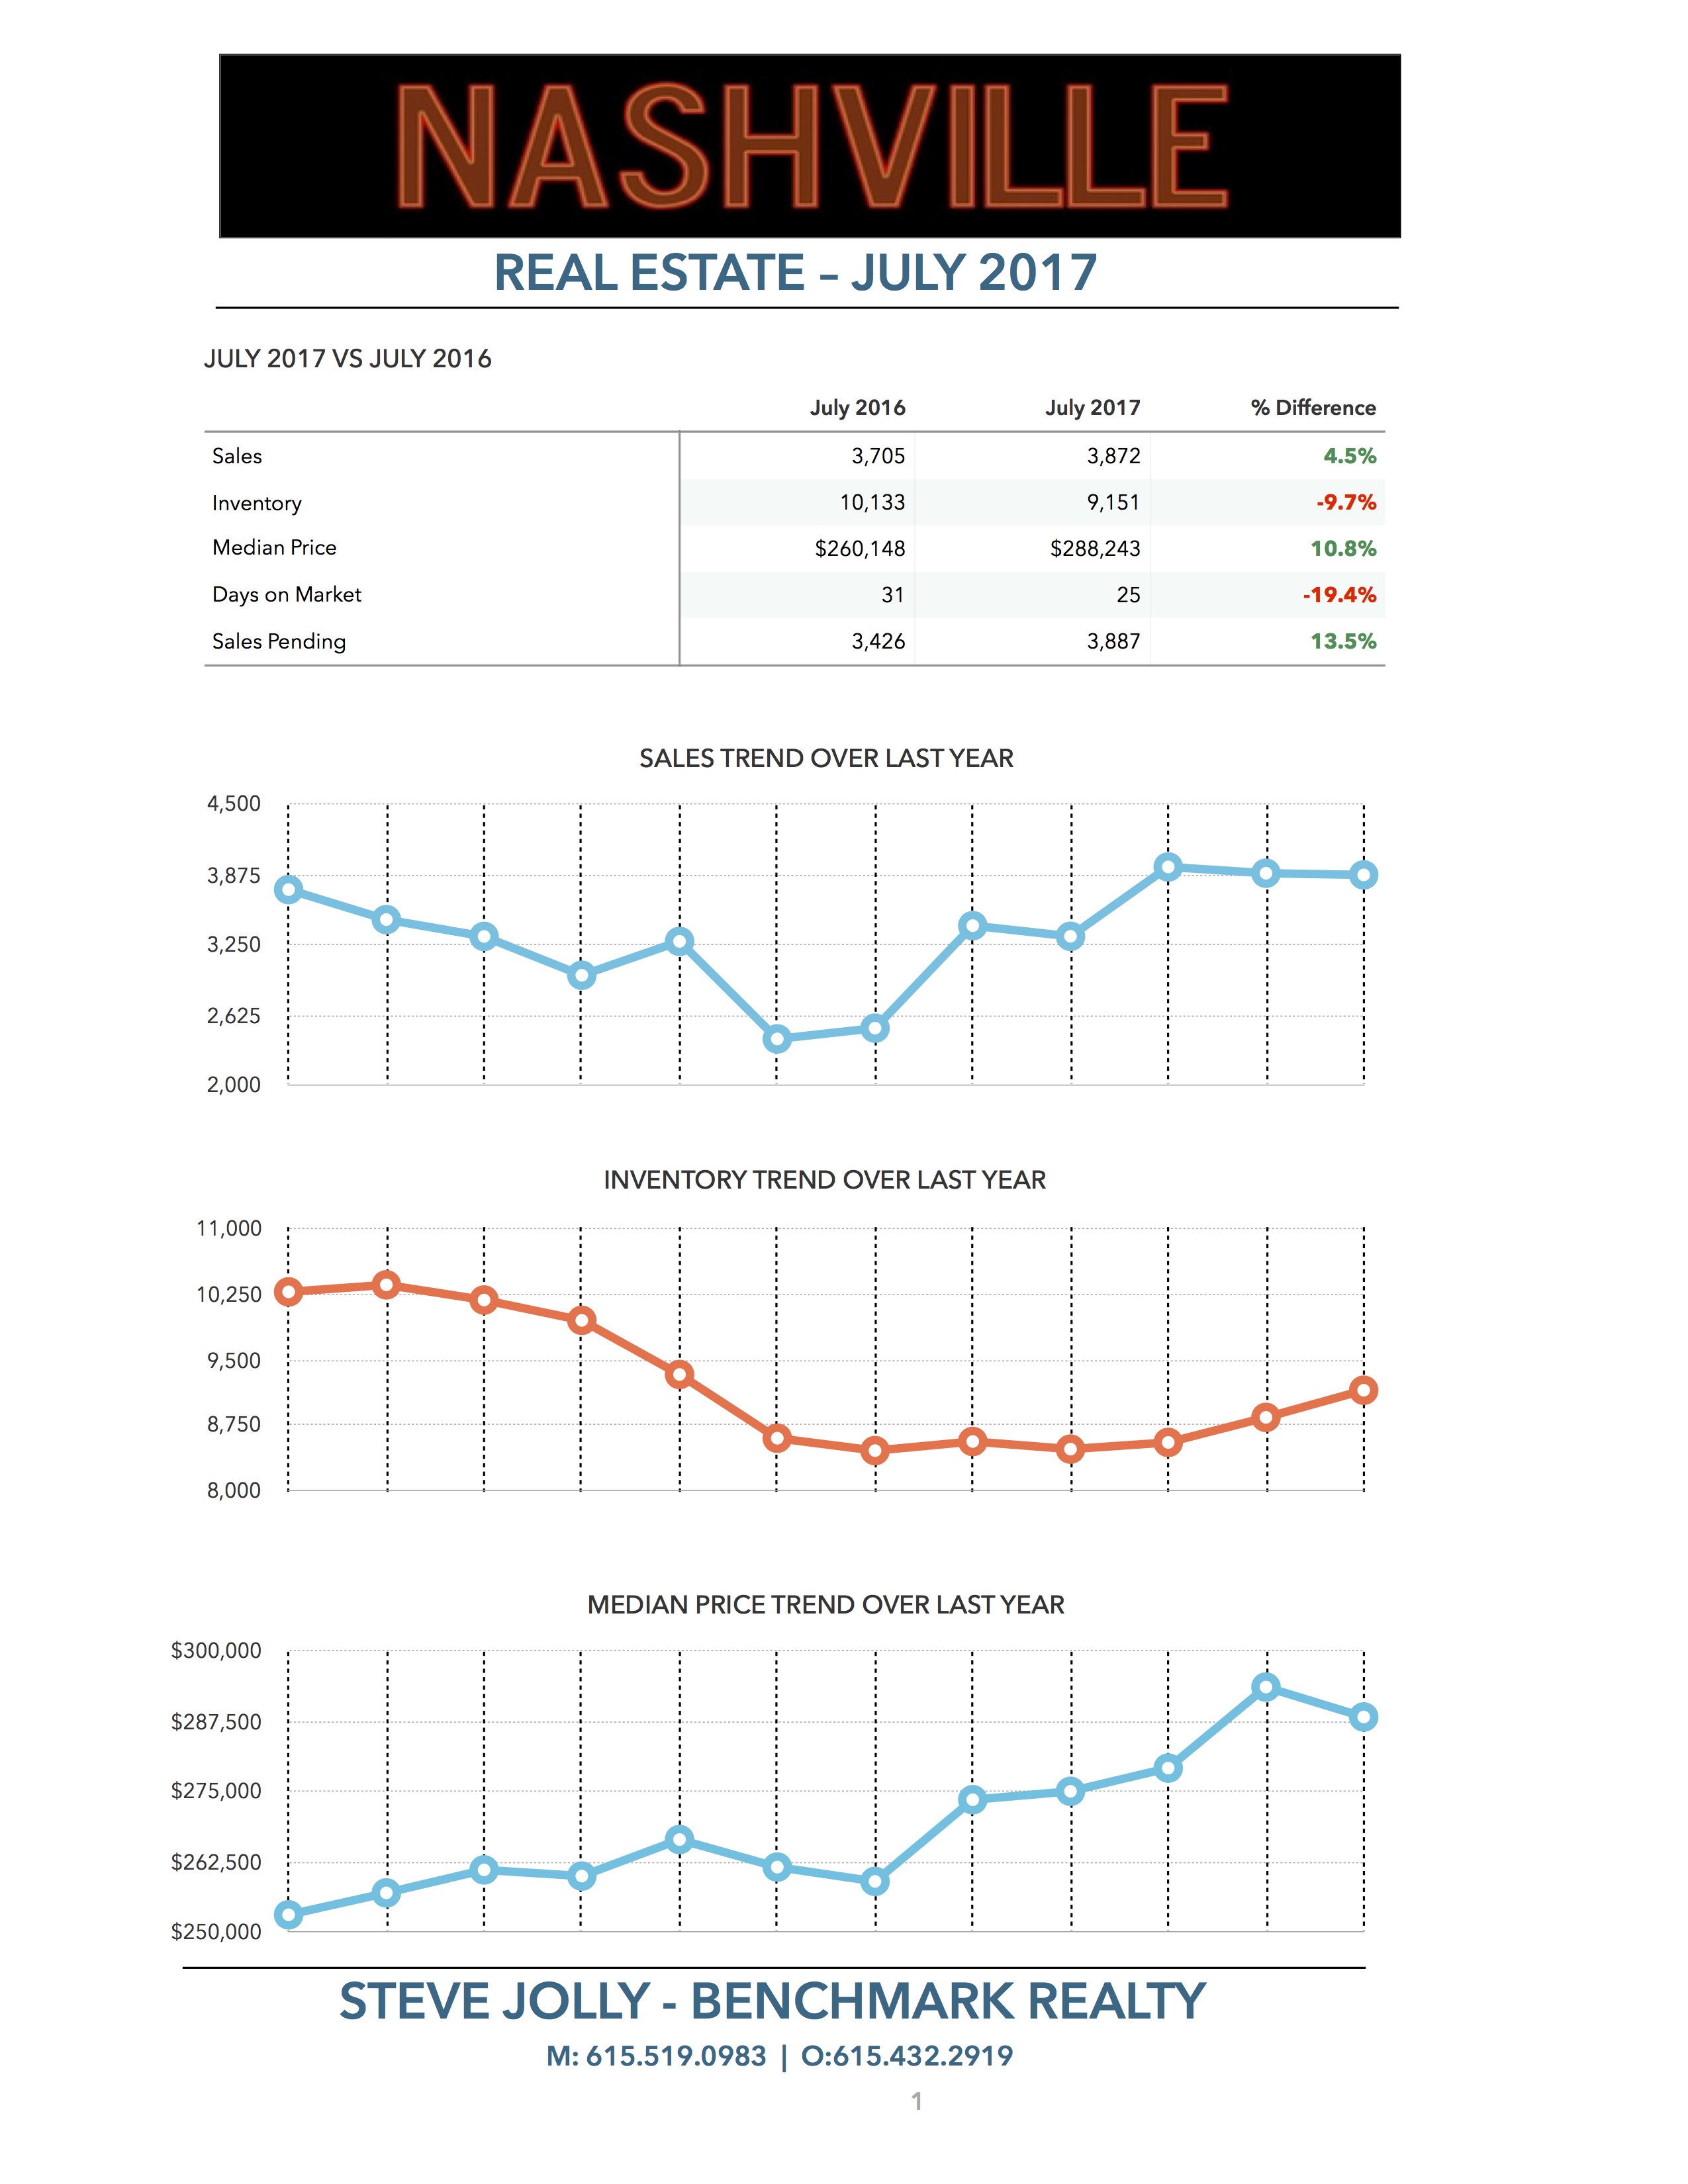 Nashville Real Estate Market July 2017